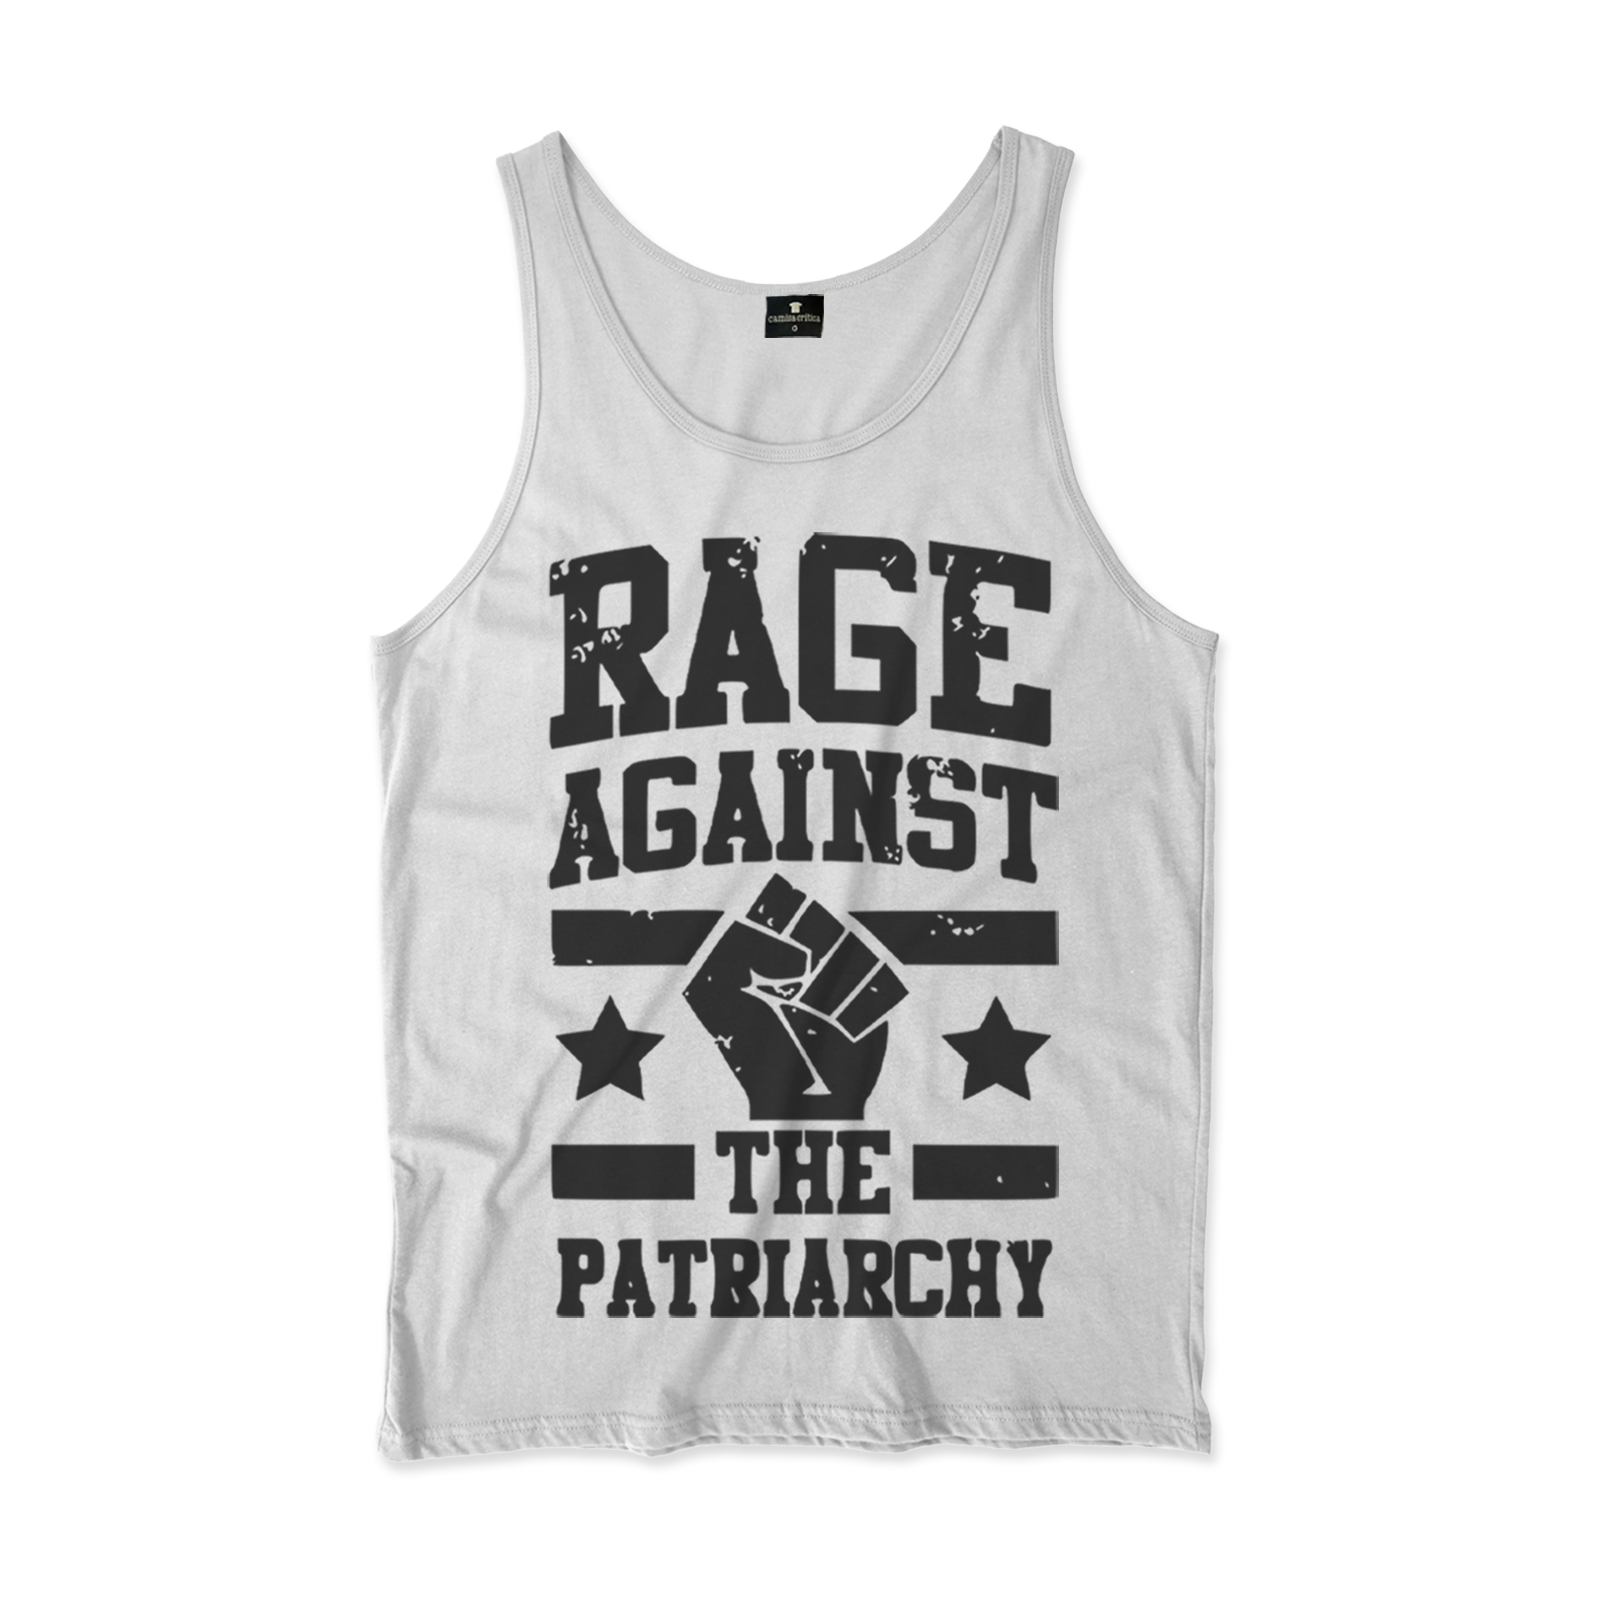 Camiseta Regata. Estampa: texto Rage Against The Patriarchy com punho cerrado no meio com duas estrelas, uma de cada lado, e duas linhas paralelas